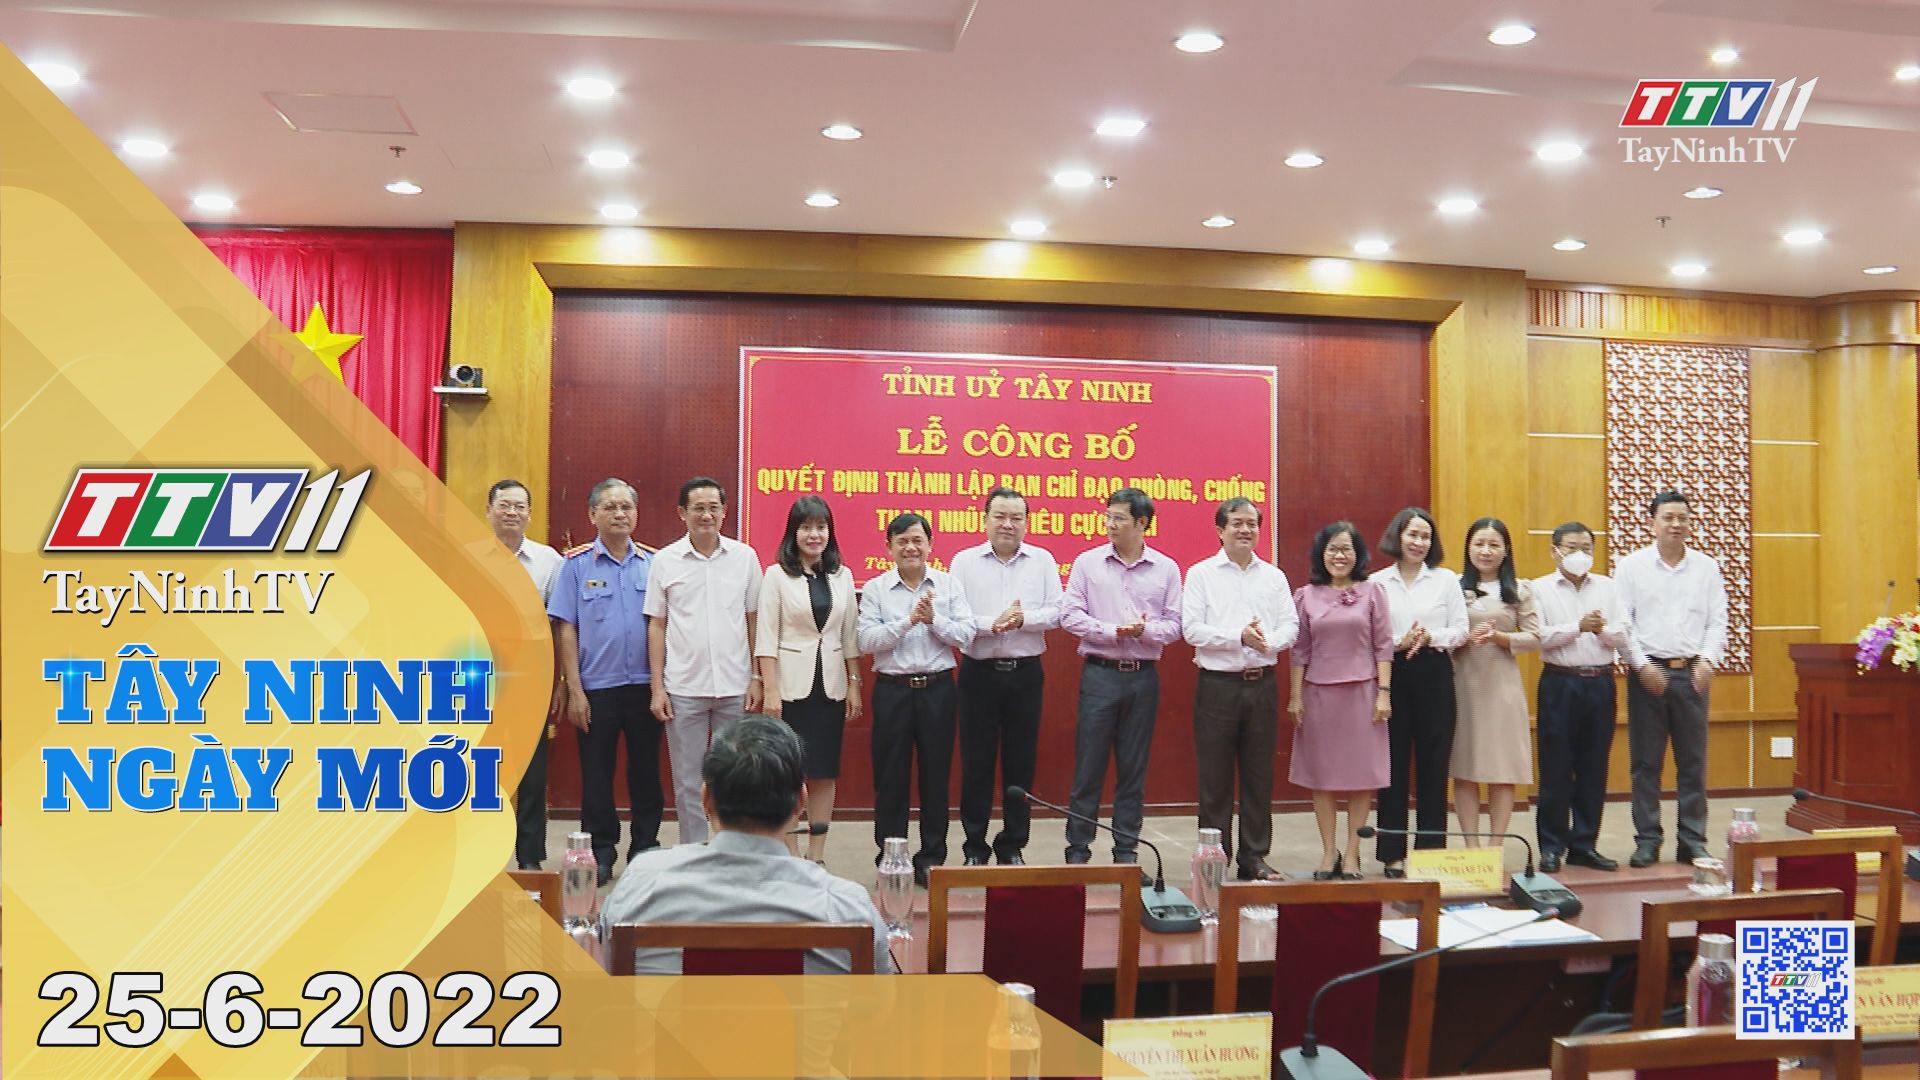 Tây Ninh ngày mới 25-6-2022 | Tin tức hôm nay | TayNinhTV